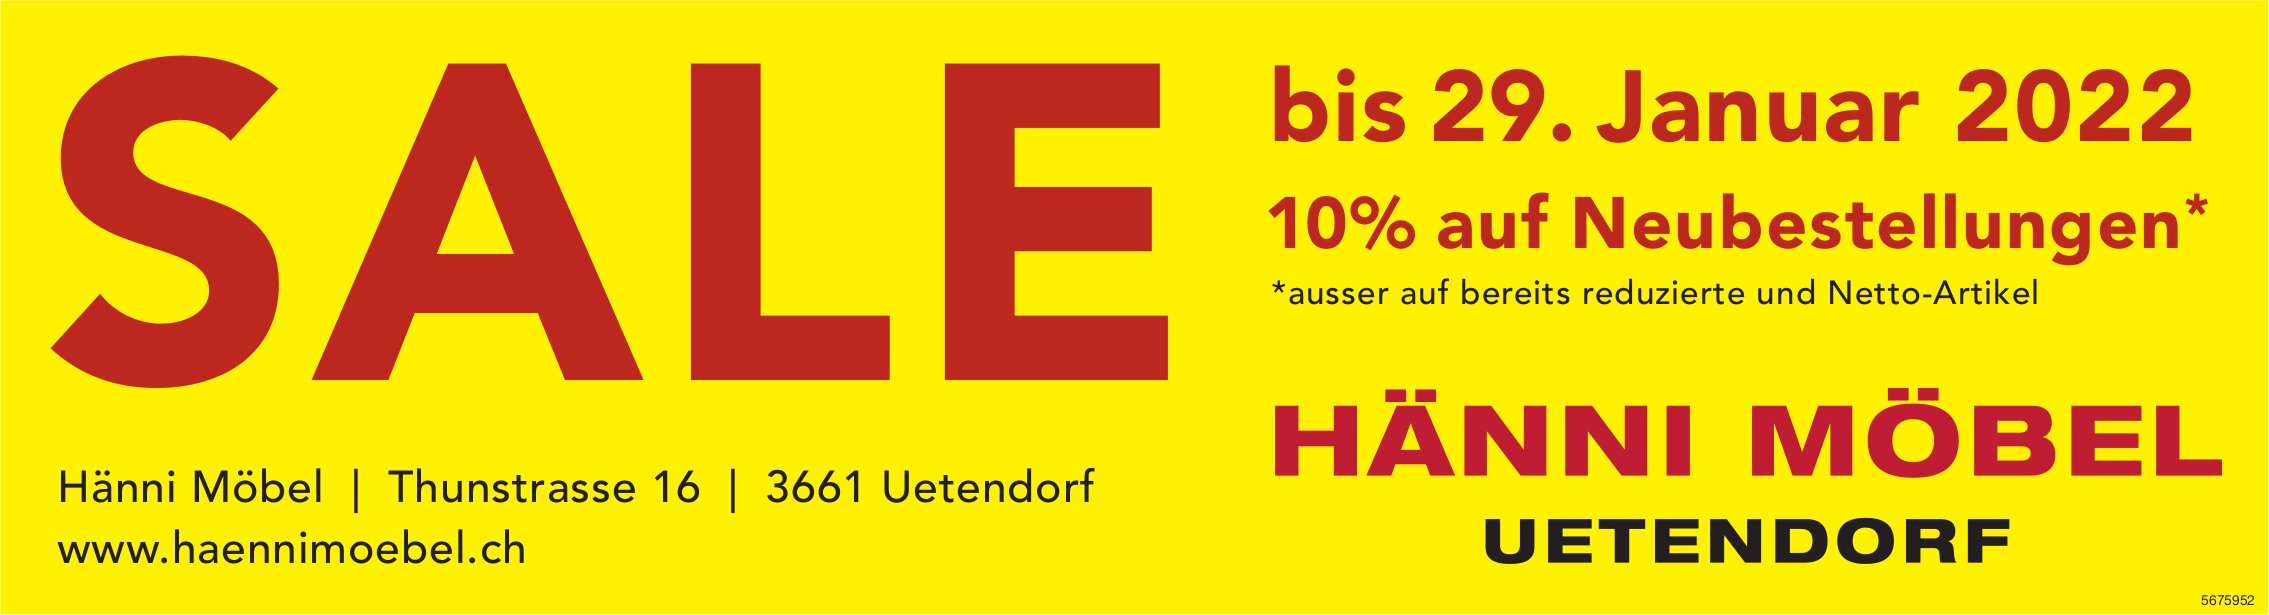 SALE bis 29. Januar, 10% auf Neubestellungen*, Hänni Möbel, Uetendorf